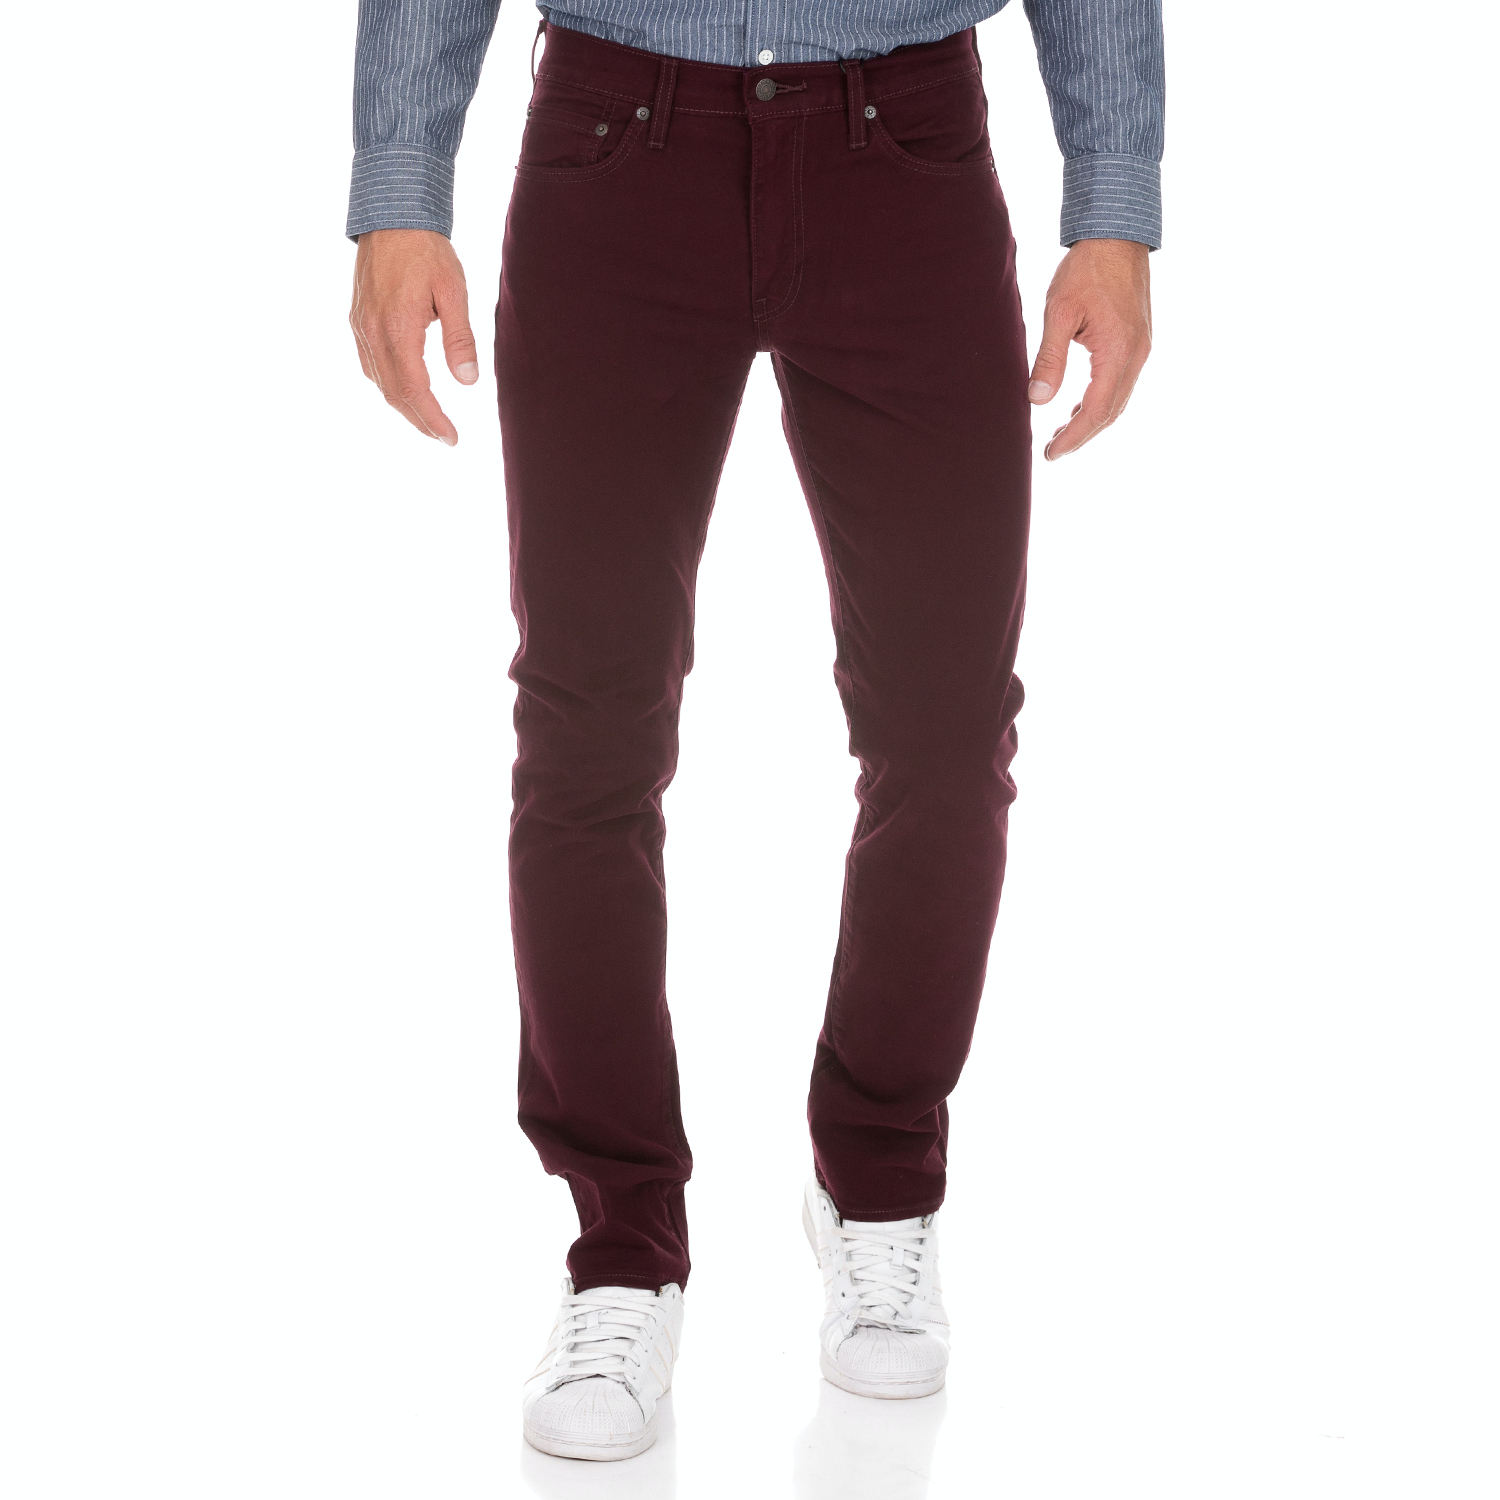 Ανδρικά/Ρούχα/Παντελόνια/Ισια Γραμμή LEVI'S - Ανδρικό κοτλέ παντελόνι LEVI'S SLIM MULLED WINE BI-STR B μπορντό